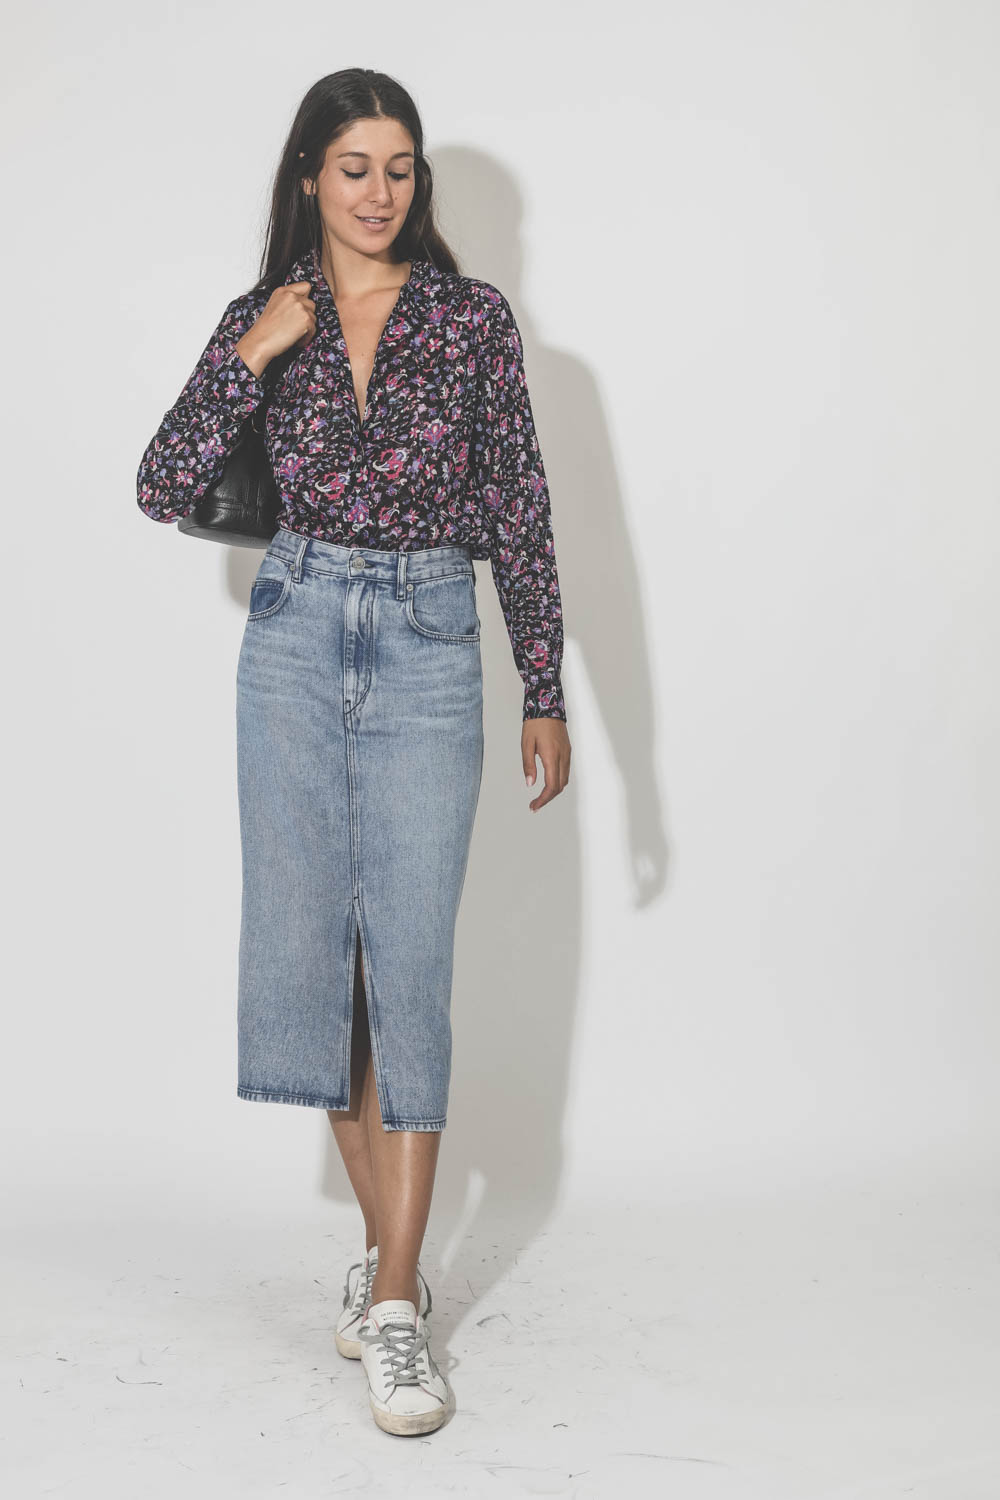 Chemise manches longues en voile de coton imprimée fleurs roses sur fond noir Gamble Marant Etoile. Porté avec un jupe en jean.